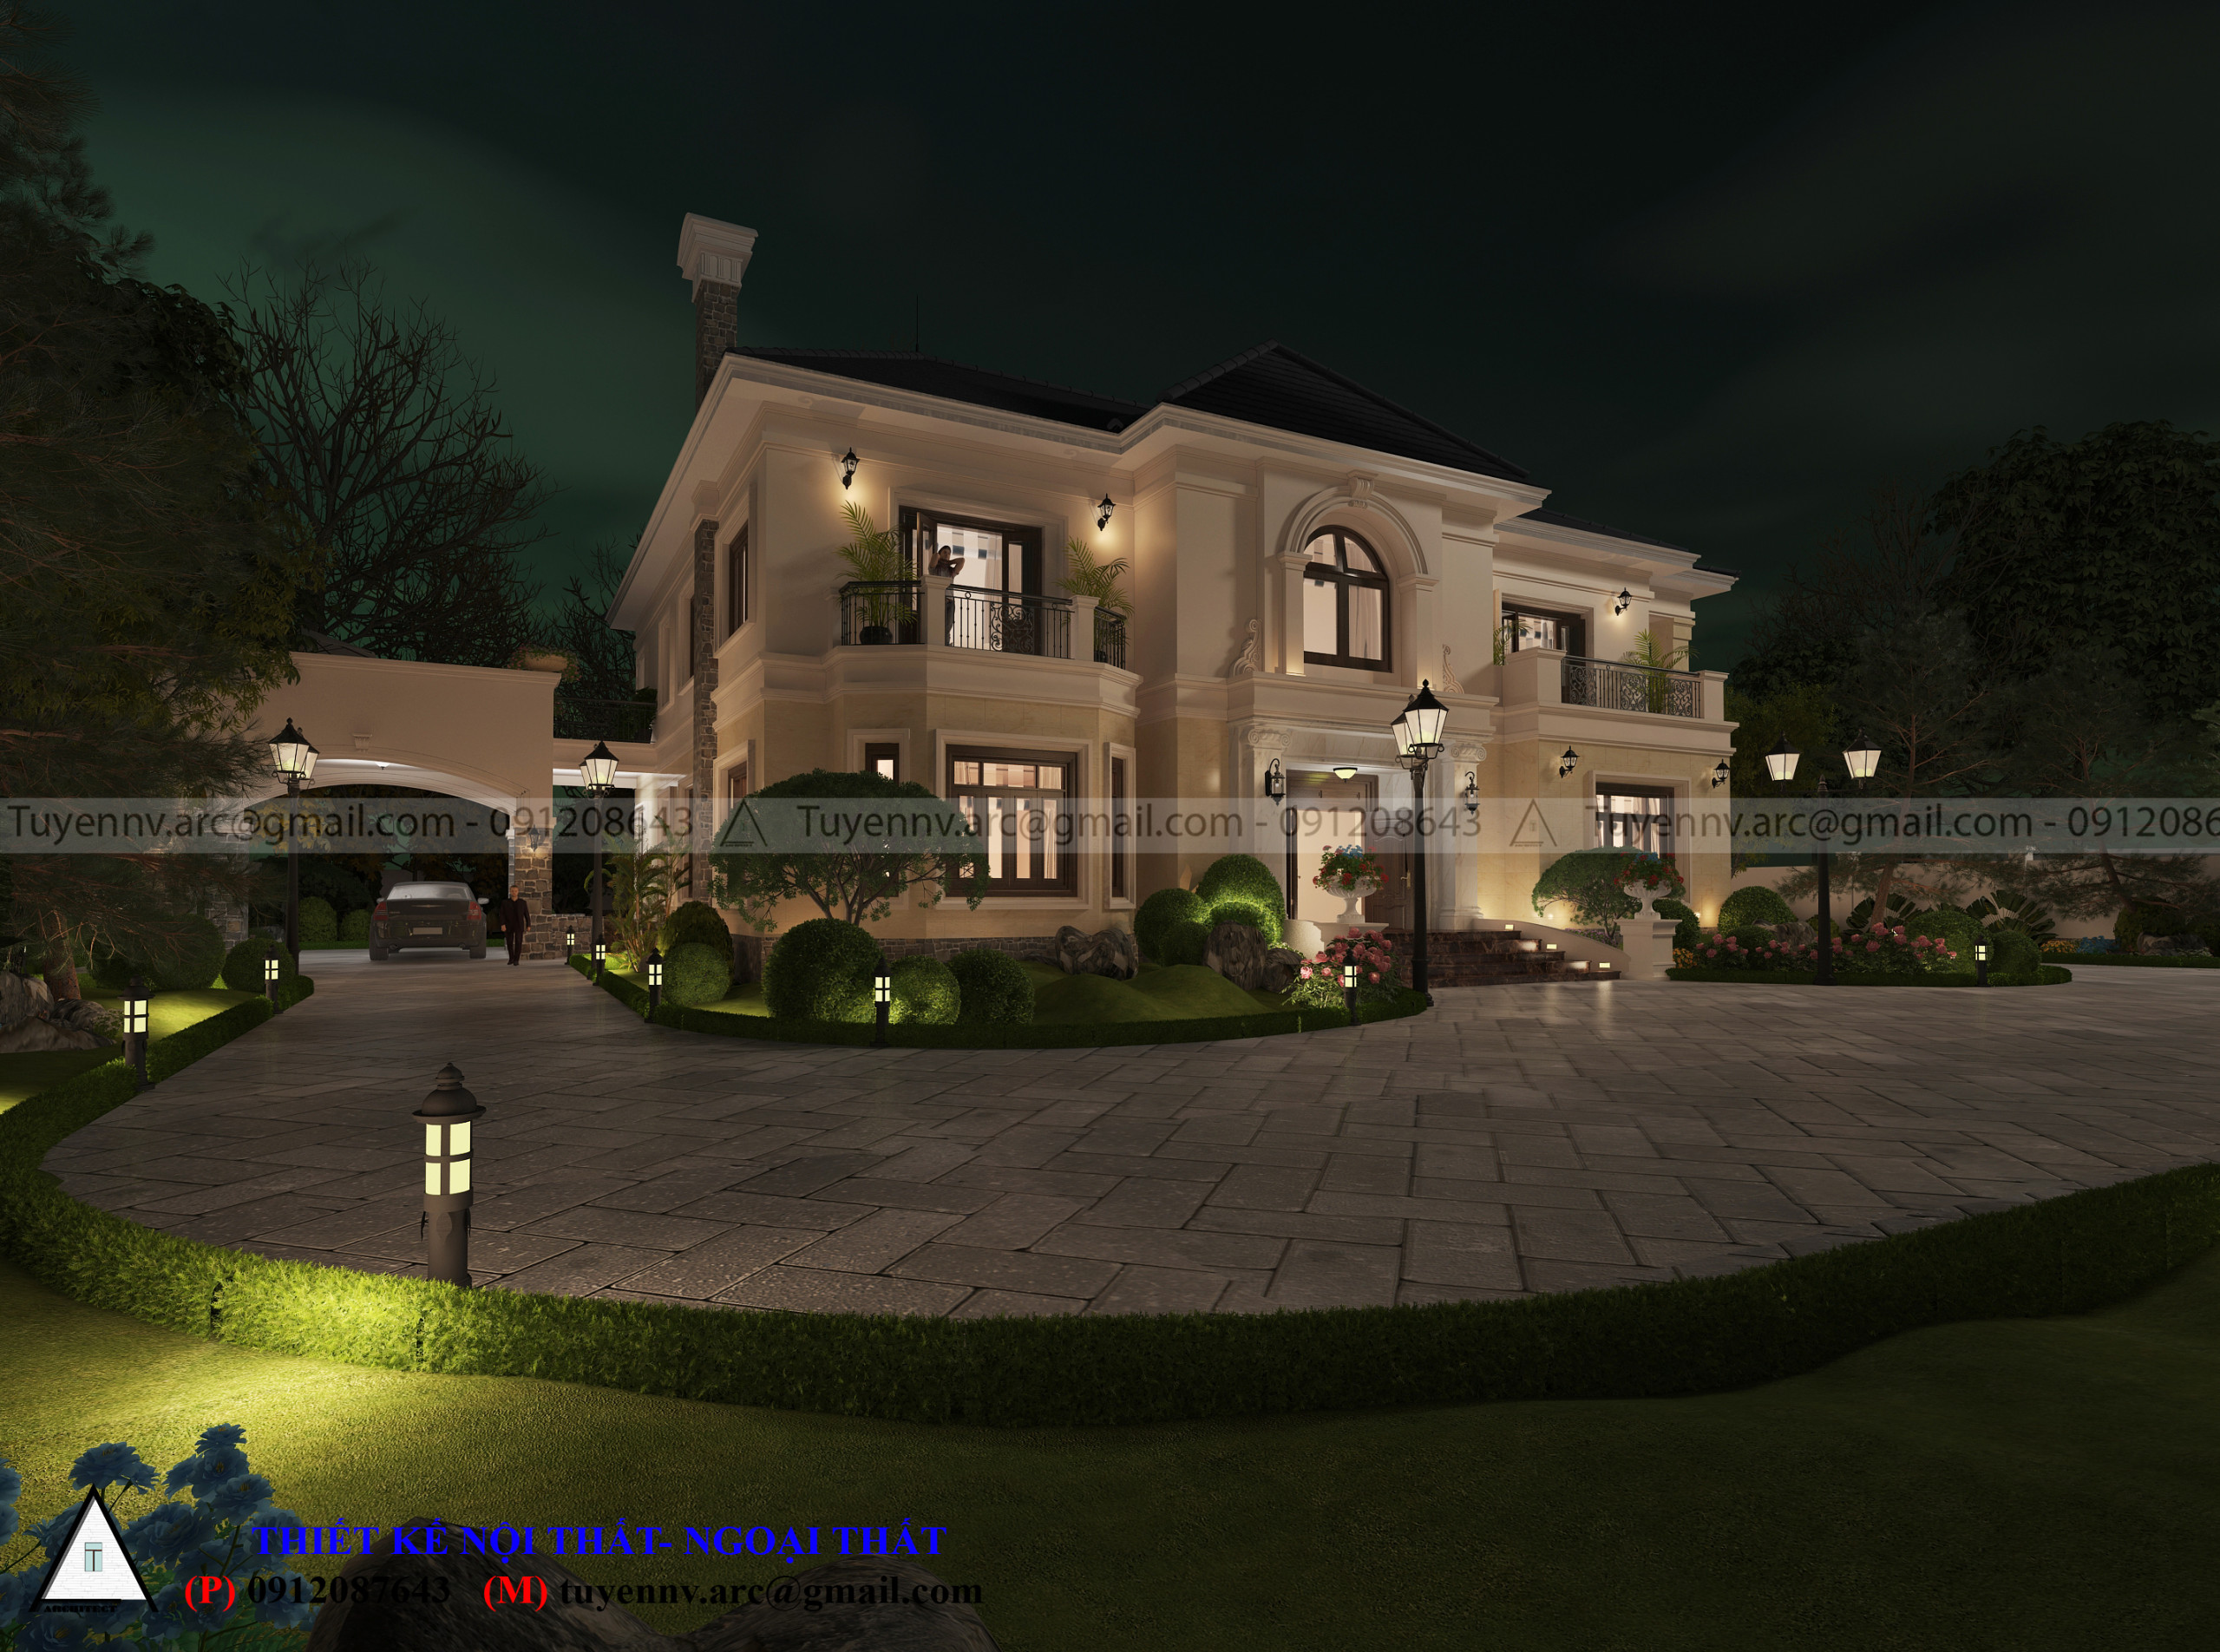 thiết kế Biệt Thự 2 tầng tại Vĩnh Phúc Biệt thư sân vườn 2 tầng 10 1549857987